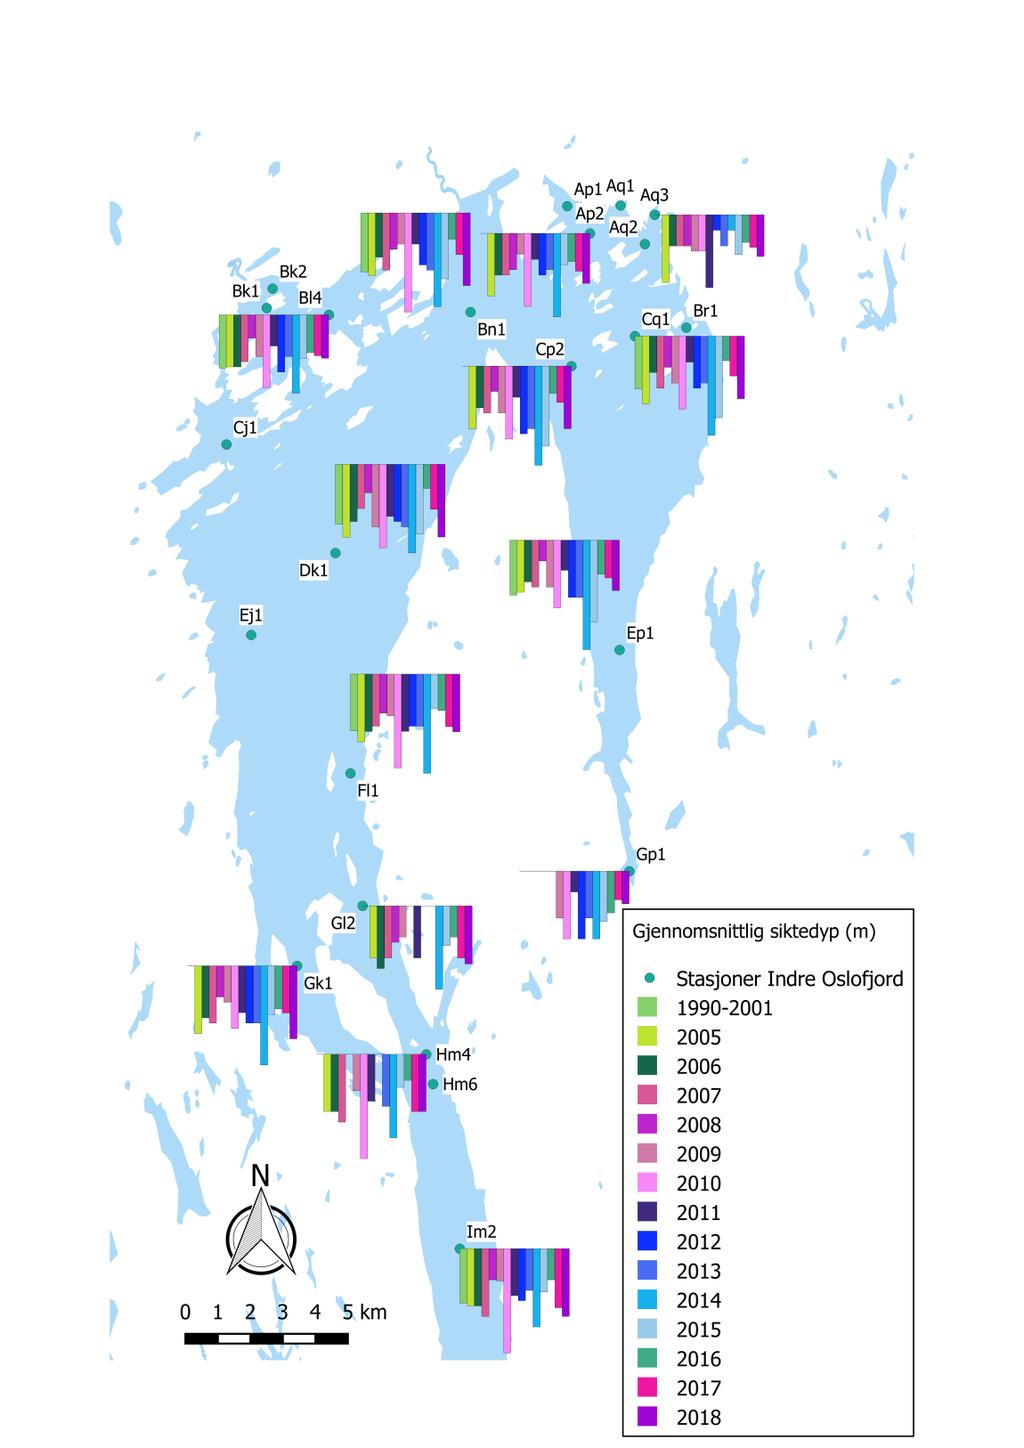 Siktedypmålinger for mai måned i 2018 og foregående år Plottede data på kartet til venstre viser gjennomsnittlige maimålinger ved utvalgte stasjoner i Indre Oslofjord (i perioden 2005-2018).